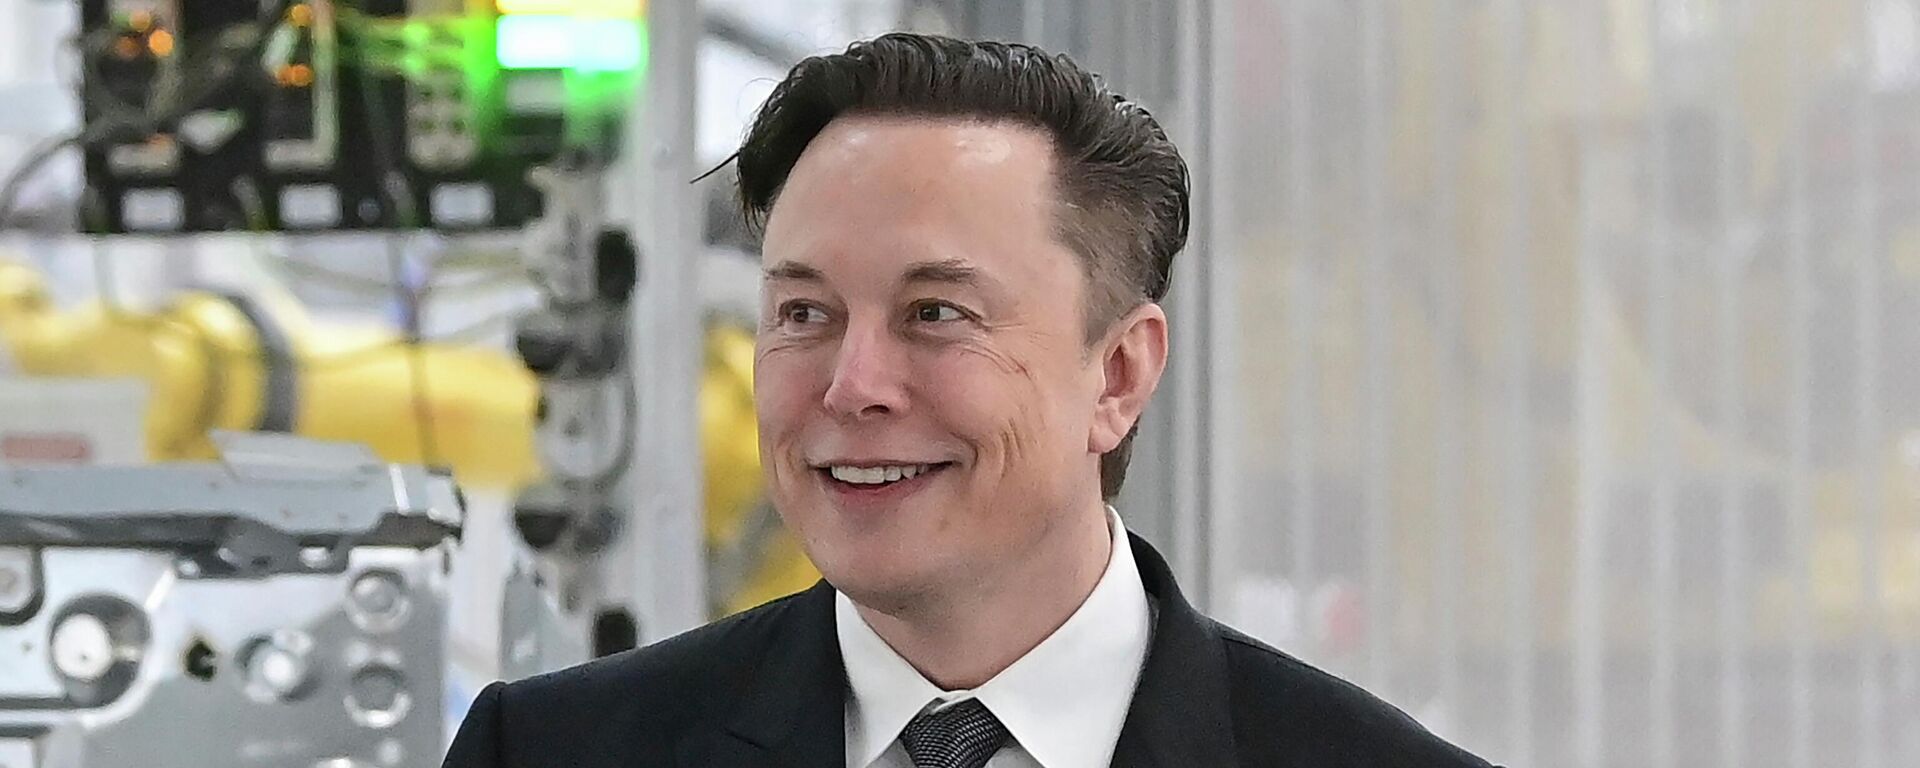  Tesla CEO Elon Musk attends the opening of the Tesla factory Berlin Brandenburg in Gruenheide, Germany on March 22, 2022. - Sputnik International, 1920, 18.05.2022